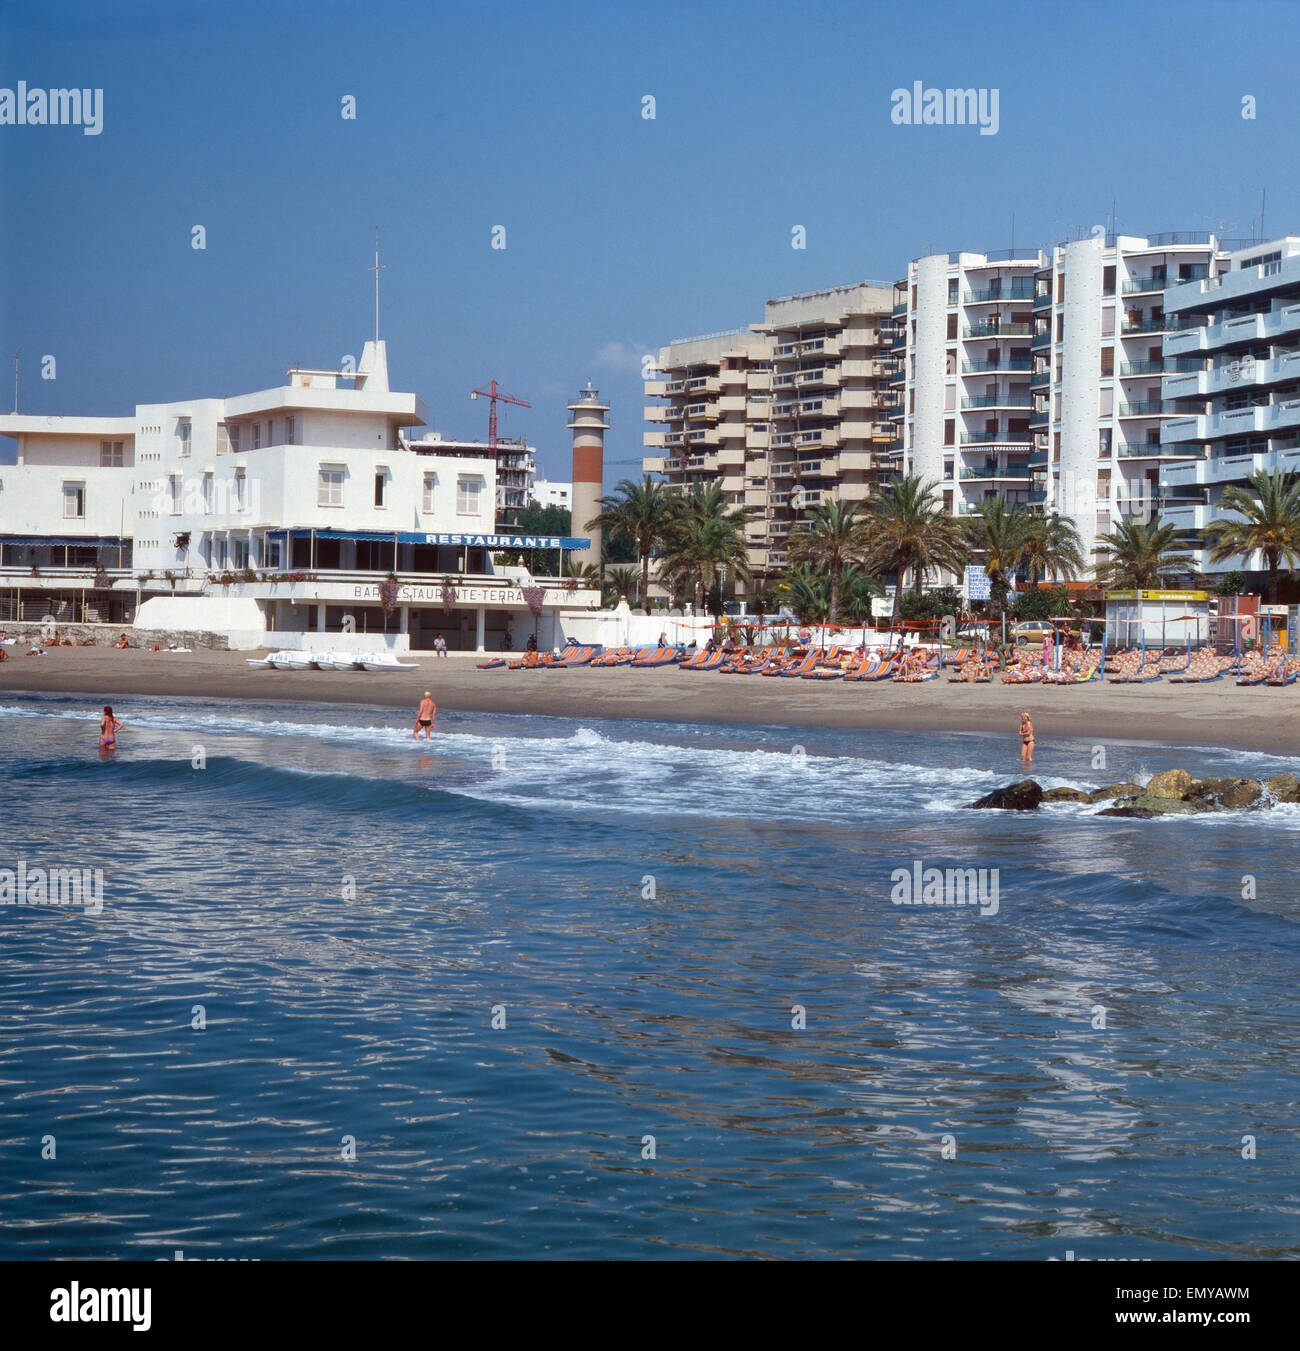 Strandurlaub in Marbella, Spanien 1970er Jahre. Vacanza sulla spiaggia di Marbella, Spagna degli anni settanta. Foto Stock